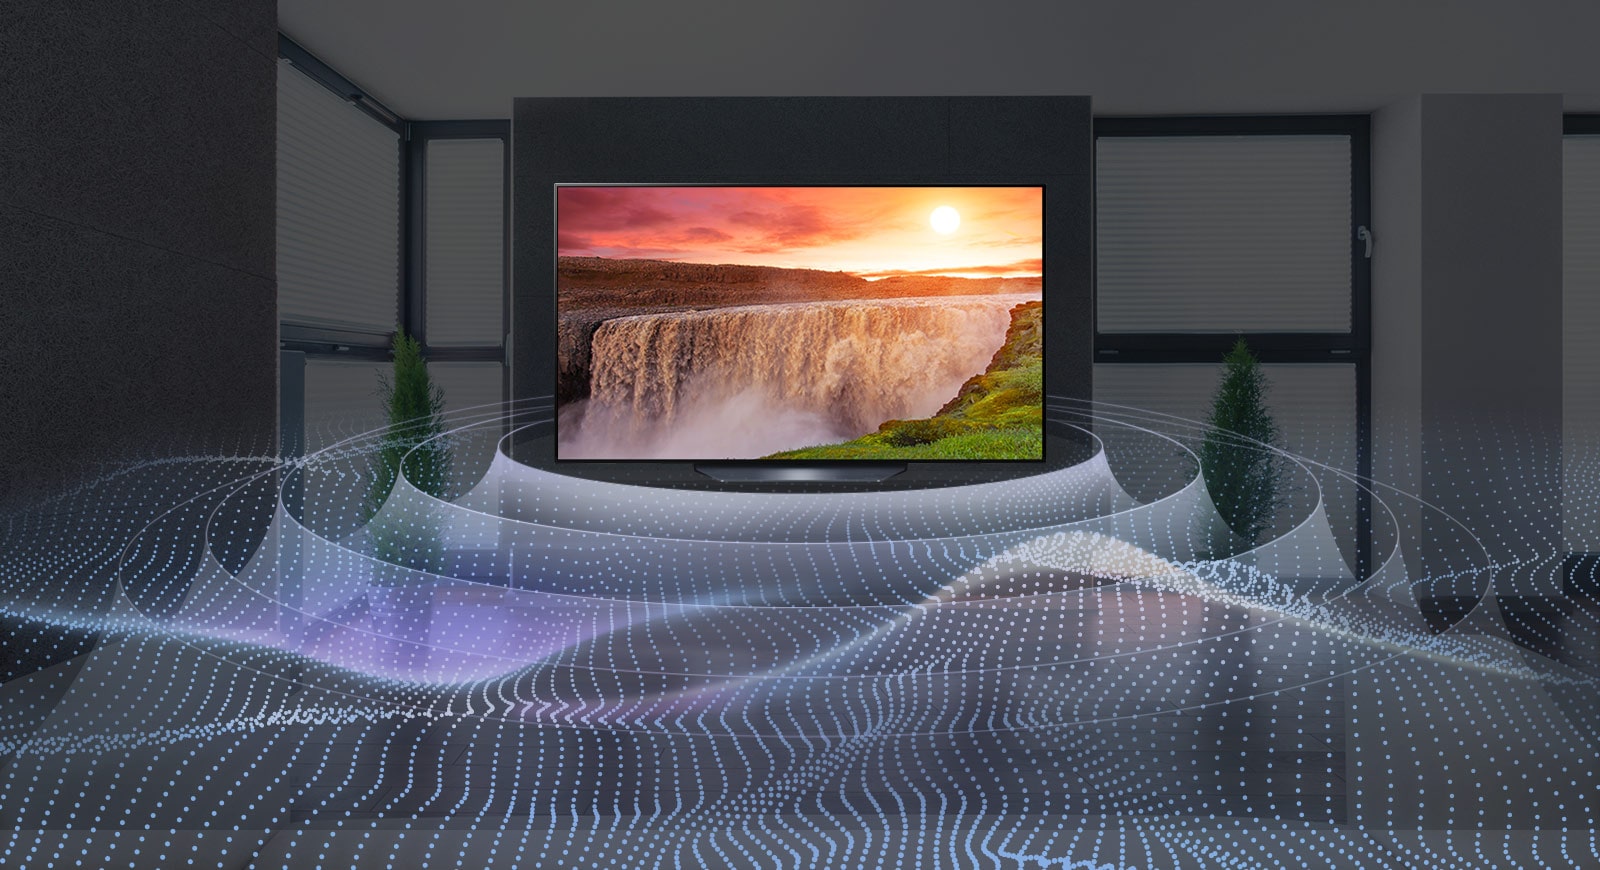 Một TV lớn màn hình phẳng trong phòng tối với thác nước rực rỡ lúc hoàng hôn hiển thị trên màn hình. Sóng phát ra từ TV theo dạng hình tròn thể hiện âm thanh vòm ảo.